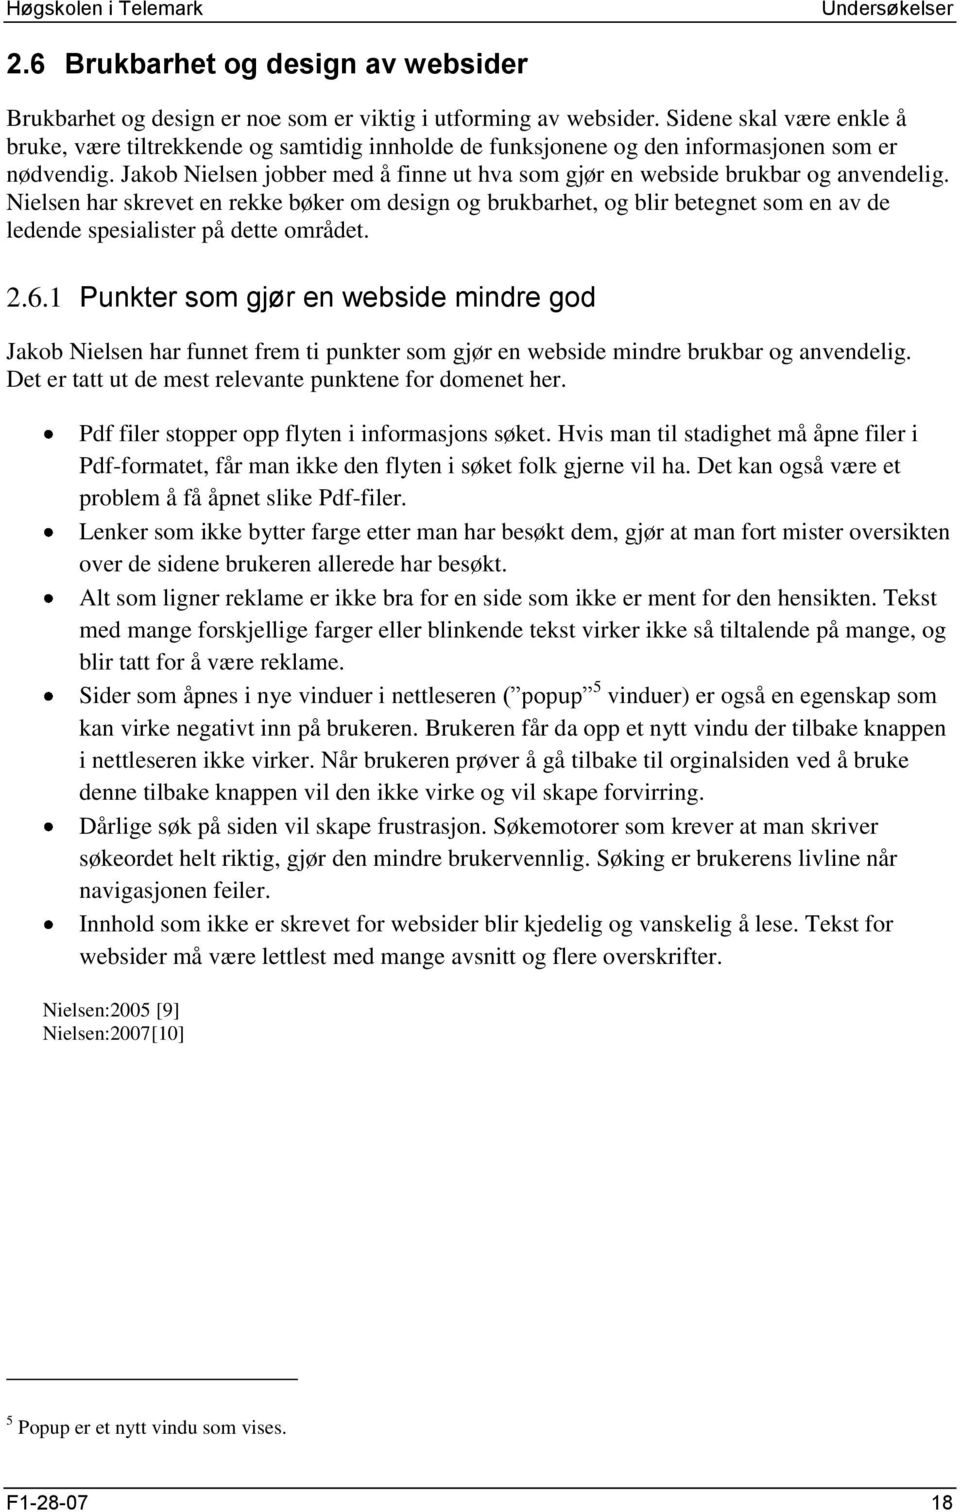 Jakob Nielsen jobber med å finne ut hva som gjør en webside brukbar og anvendelig.